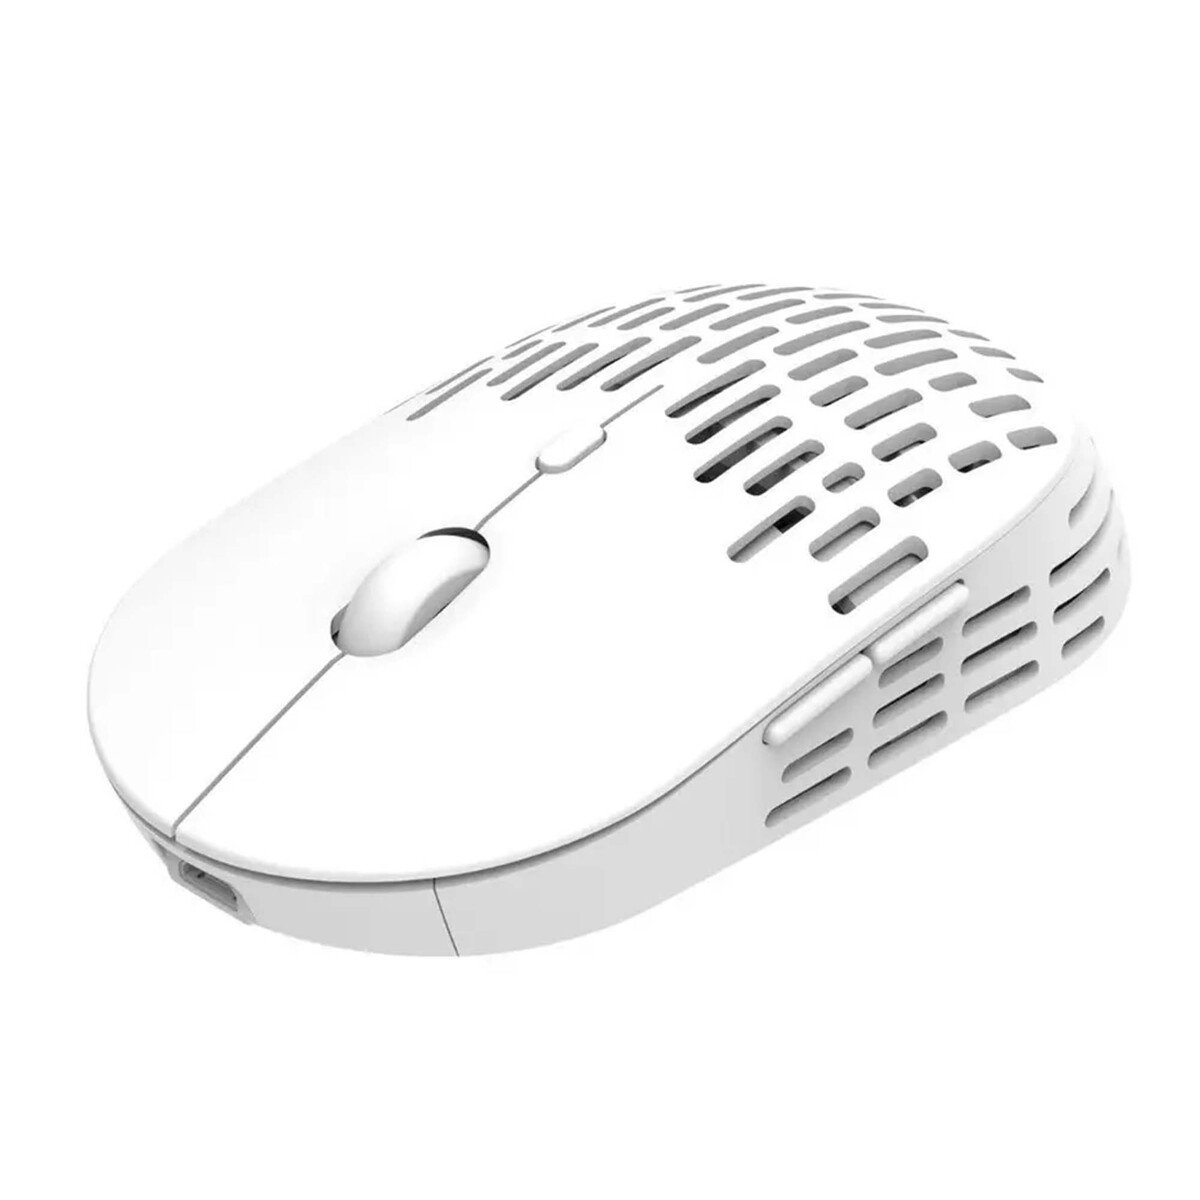 Altec Lansing Wireless Mouse ALBM7422 White